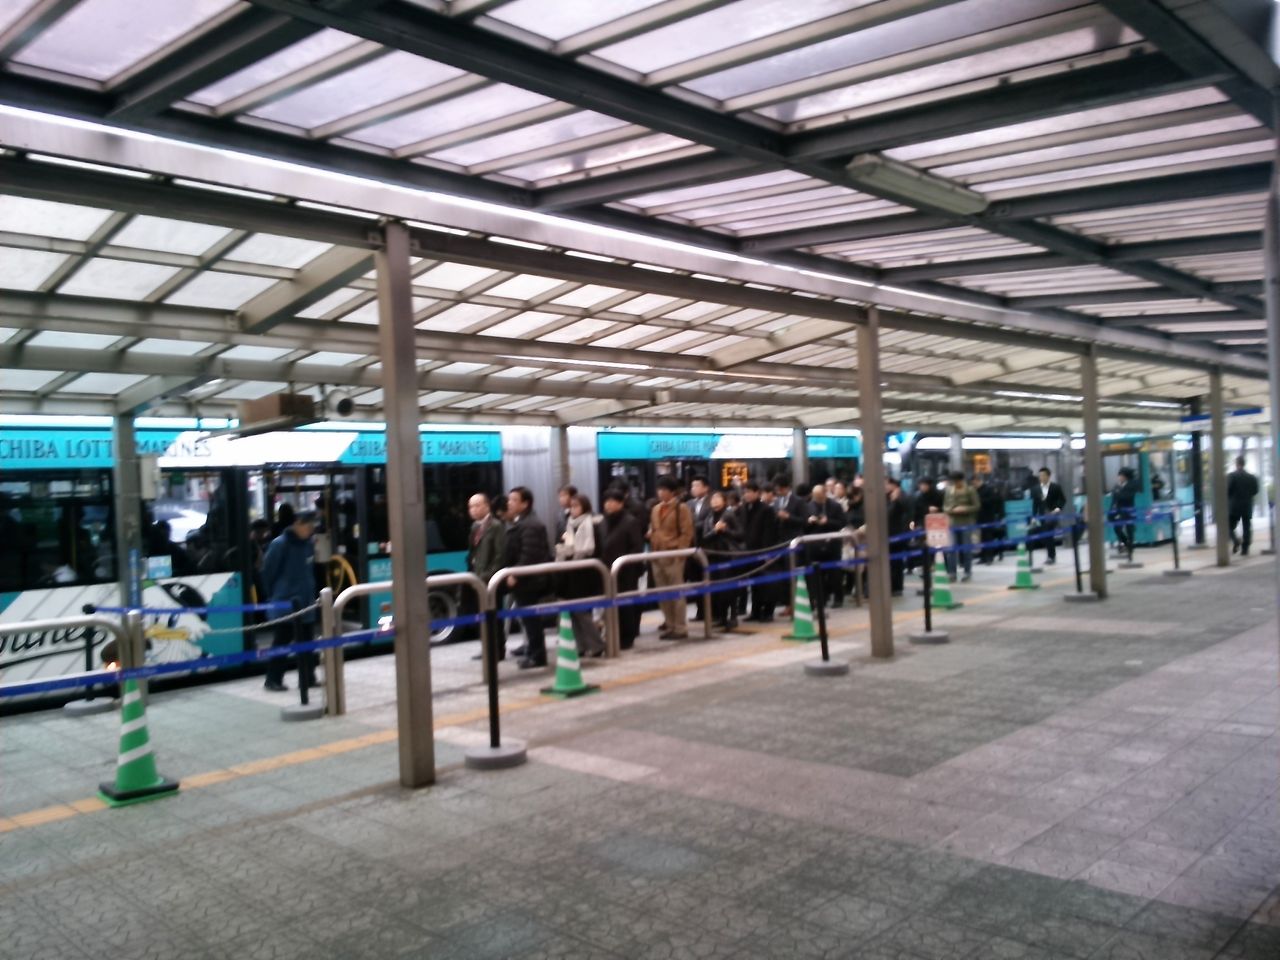 海浜幕張 幕張本郷間のバス輸送改善は可能か その5 迫力ある朝ラッシュ時幕張本郷駅の観察 Shinoの鉄道ブログ